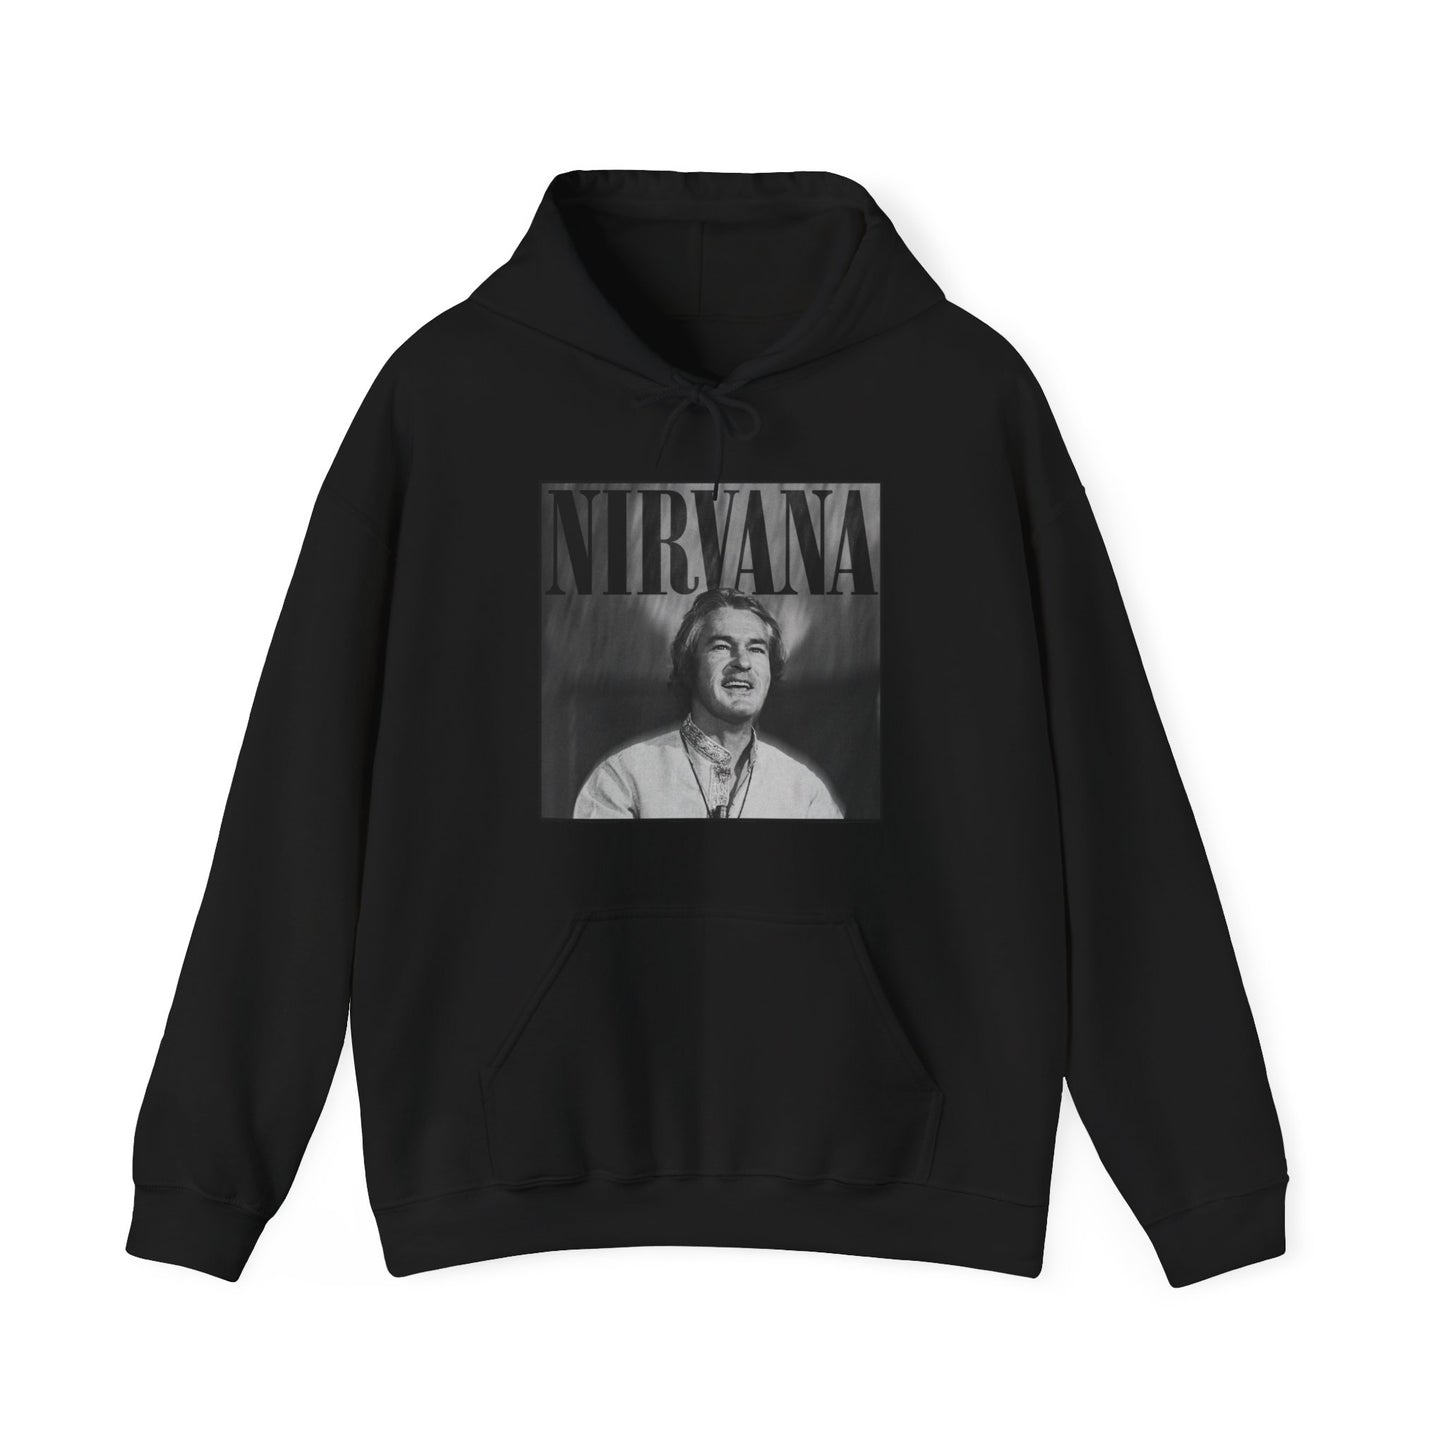 Nirvana - Timothy Leary Unisex Hoodie